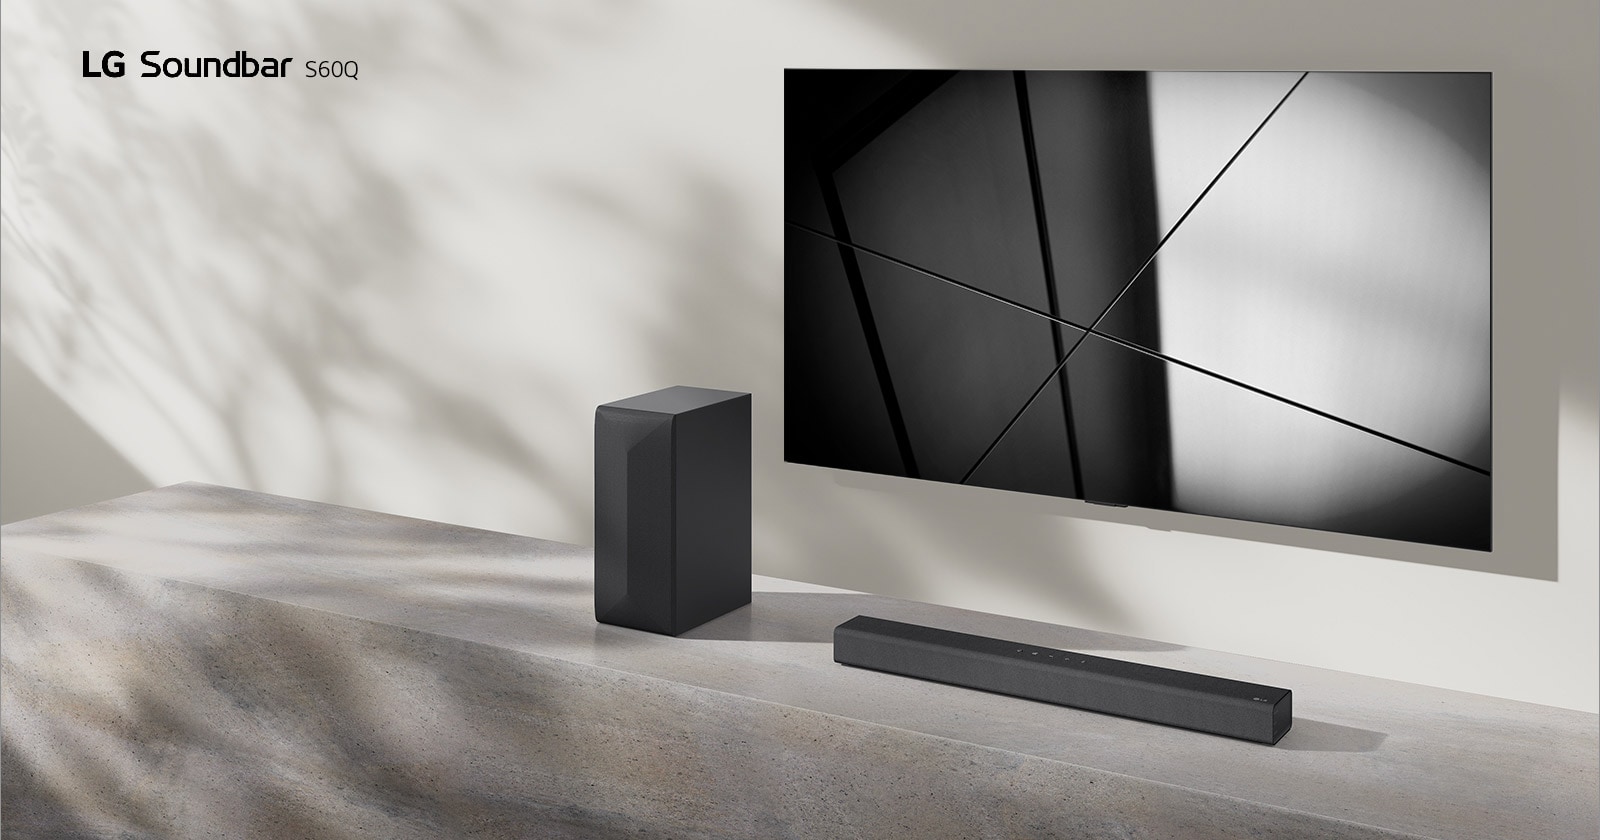 LG Sound Bar S40Q og LG-TV plassert sammen i en stue. TV-en er på, og viser et geometrisk bilde.